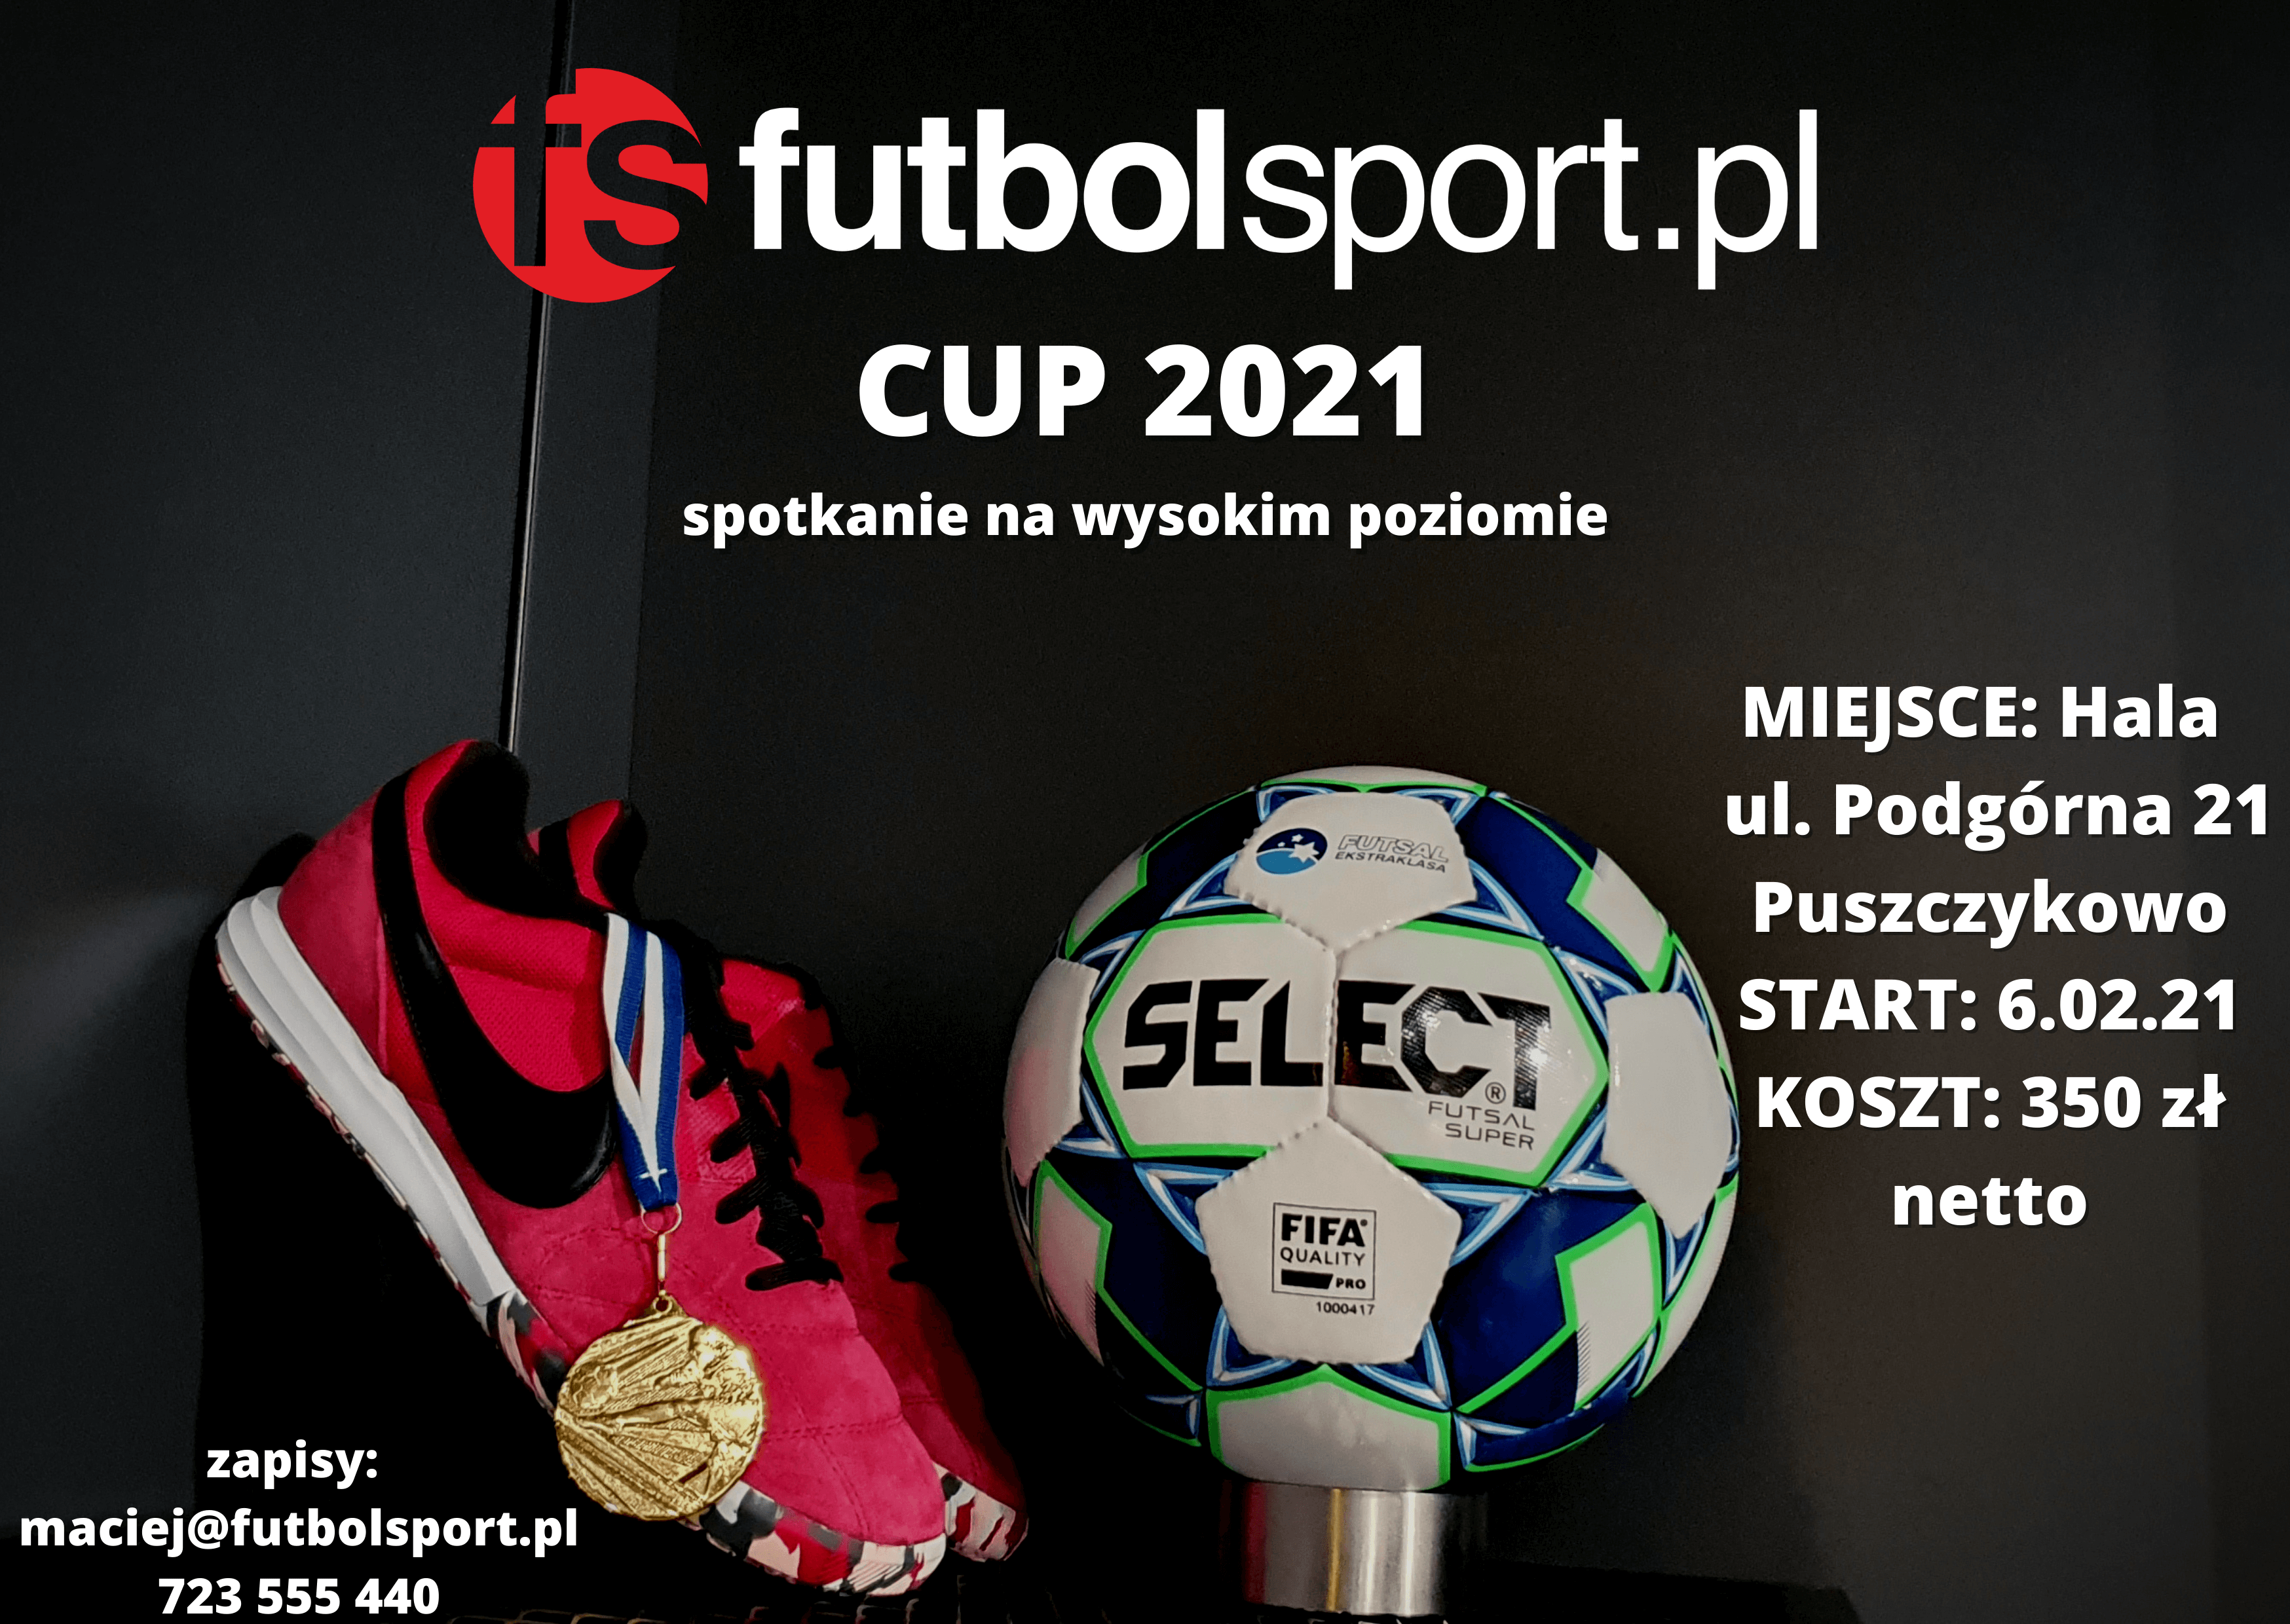 Ruszają zapisy do Turnieju futbolsport.pl Cup 2021